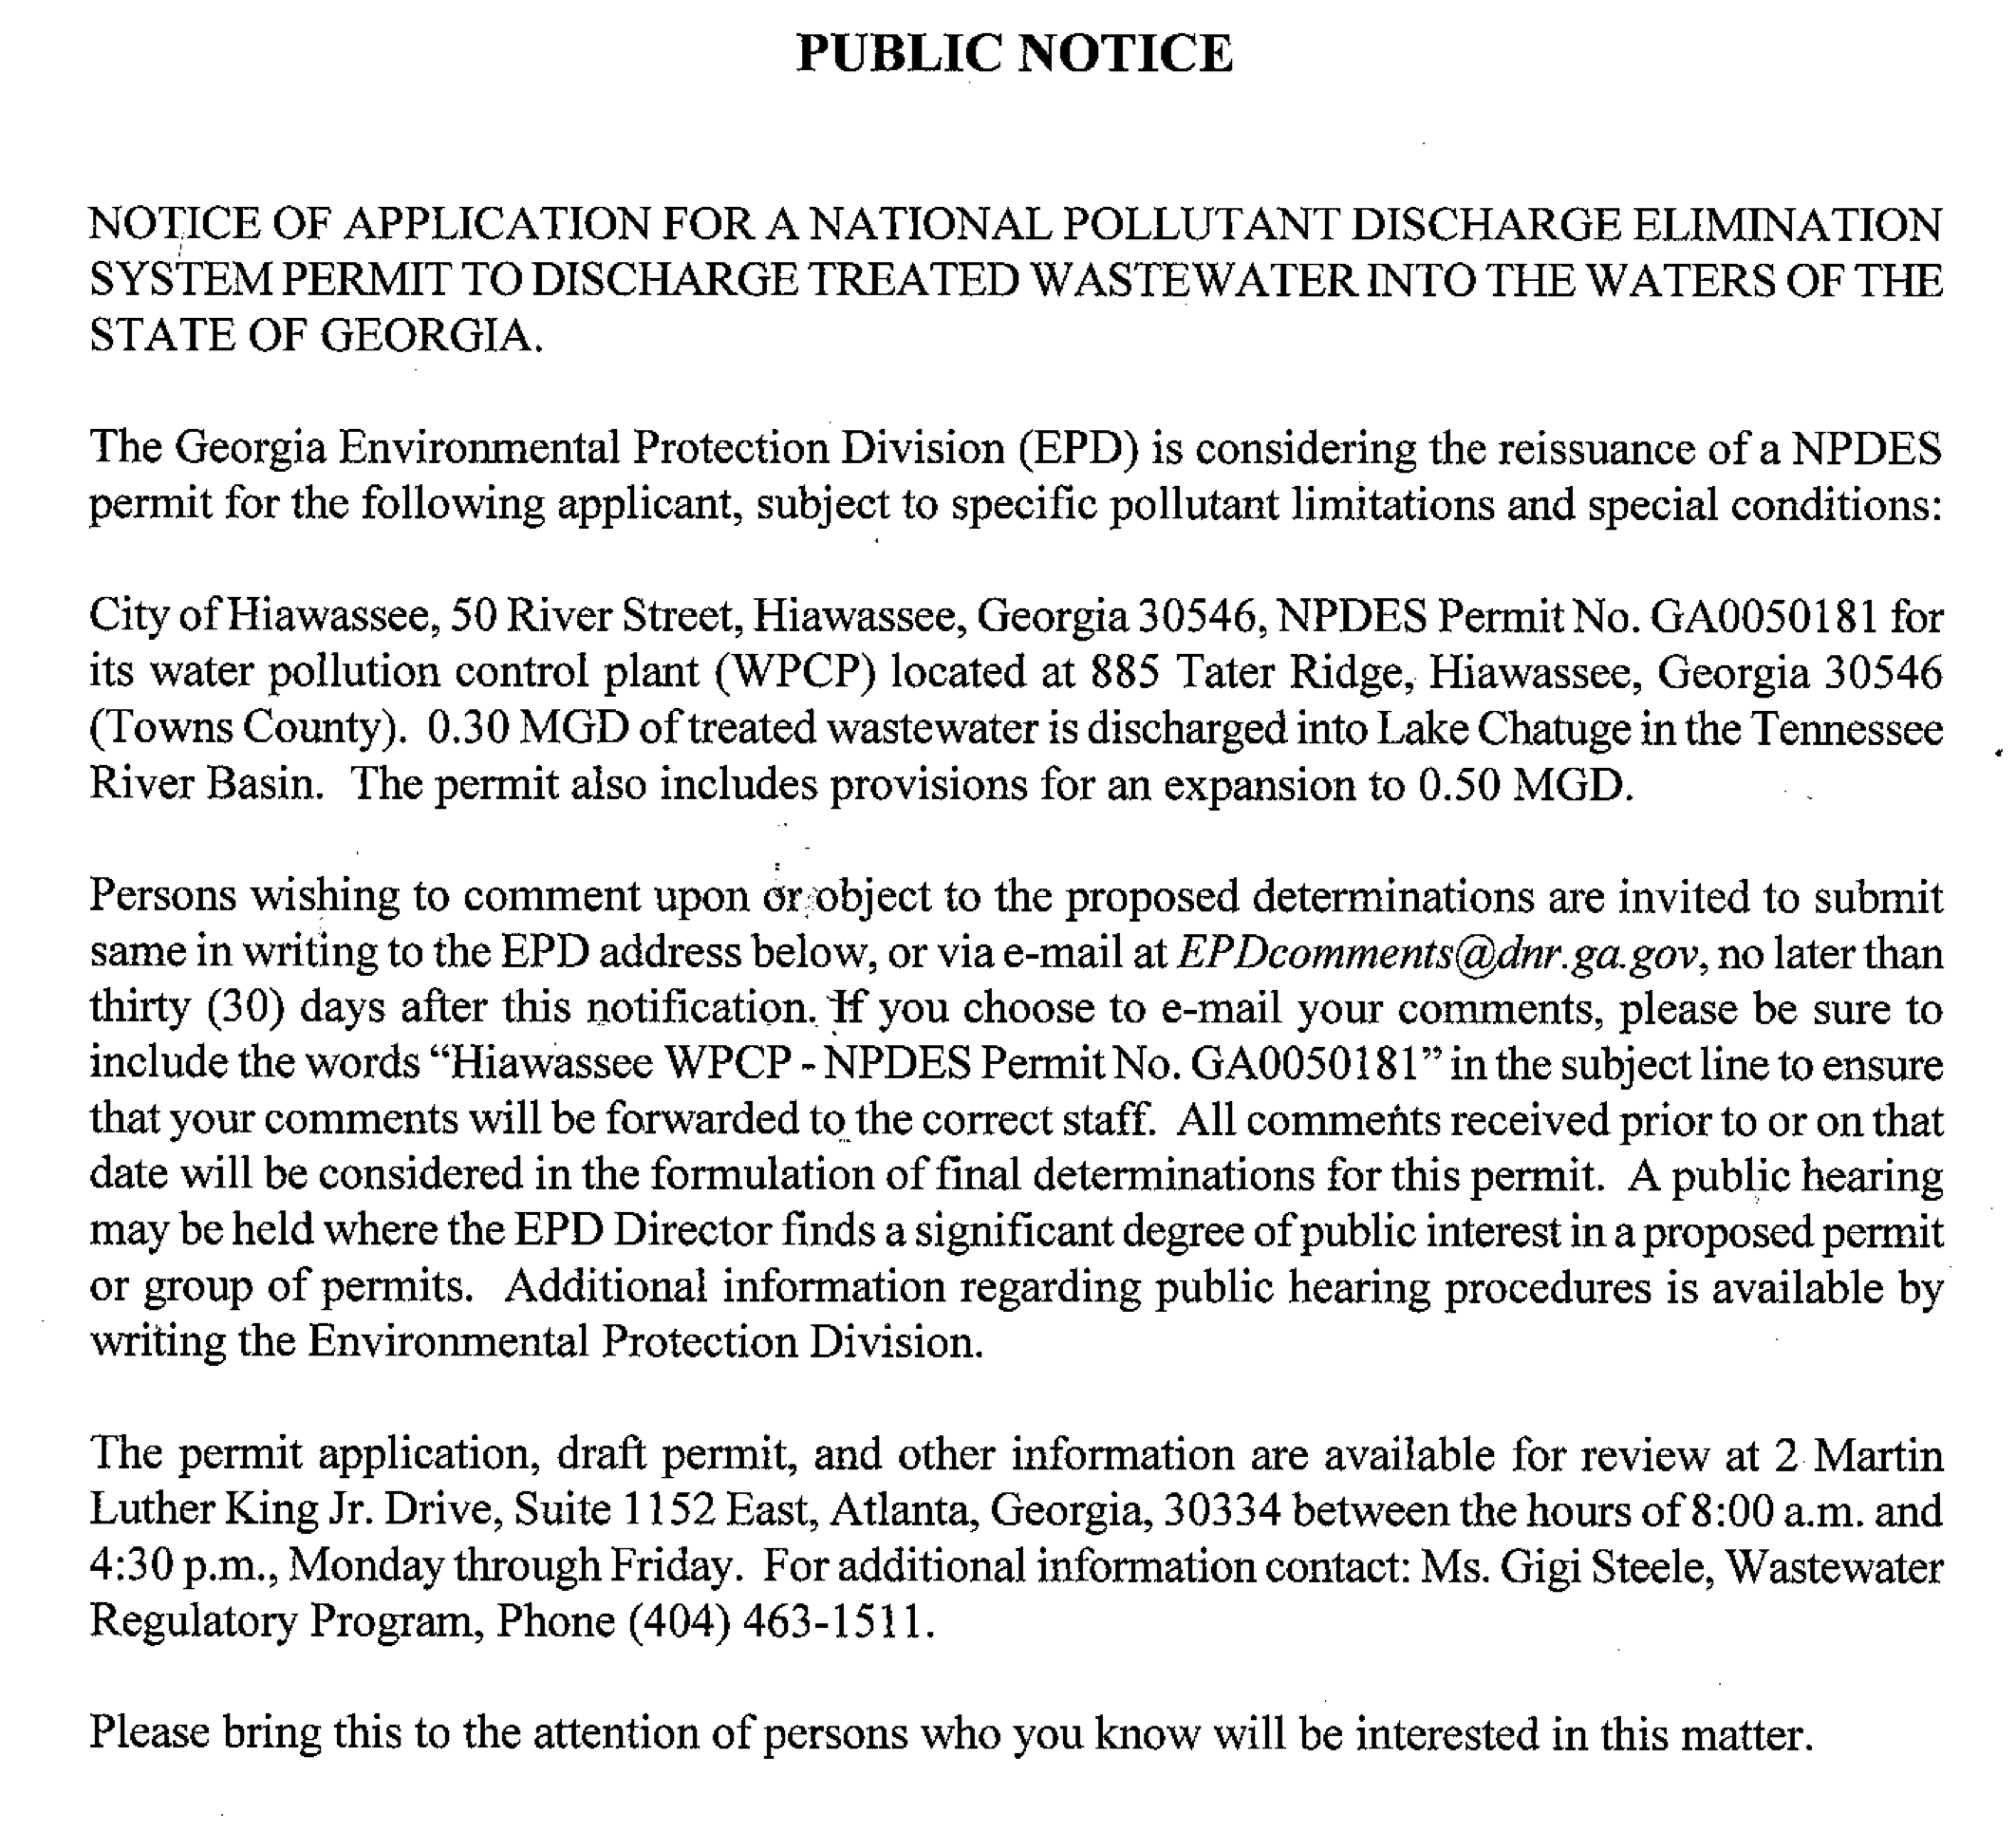 Sewer-Plant-Expansion-Public-Notice